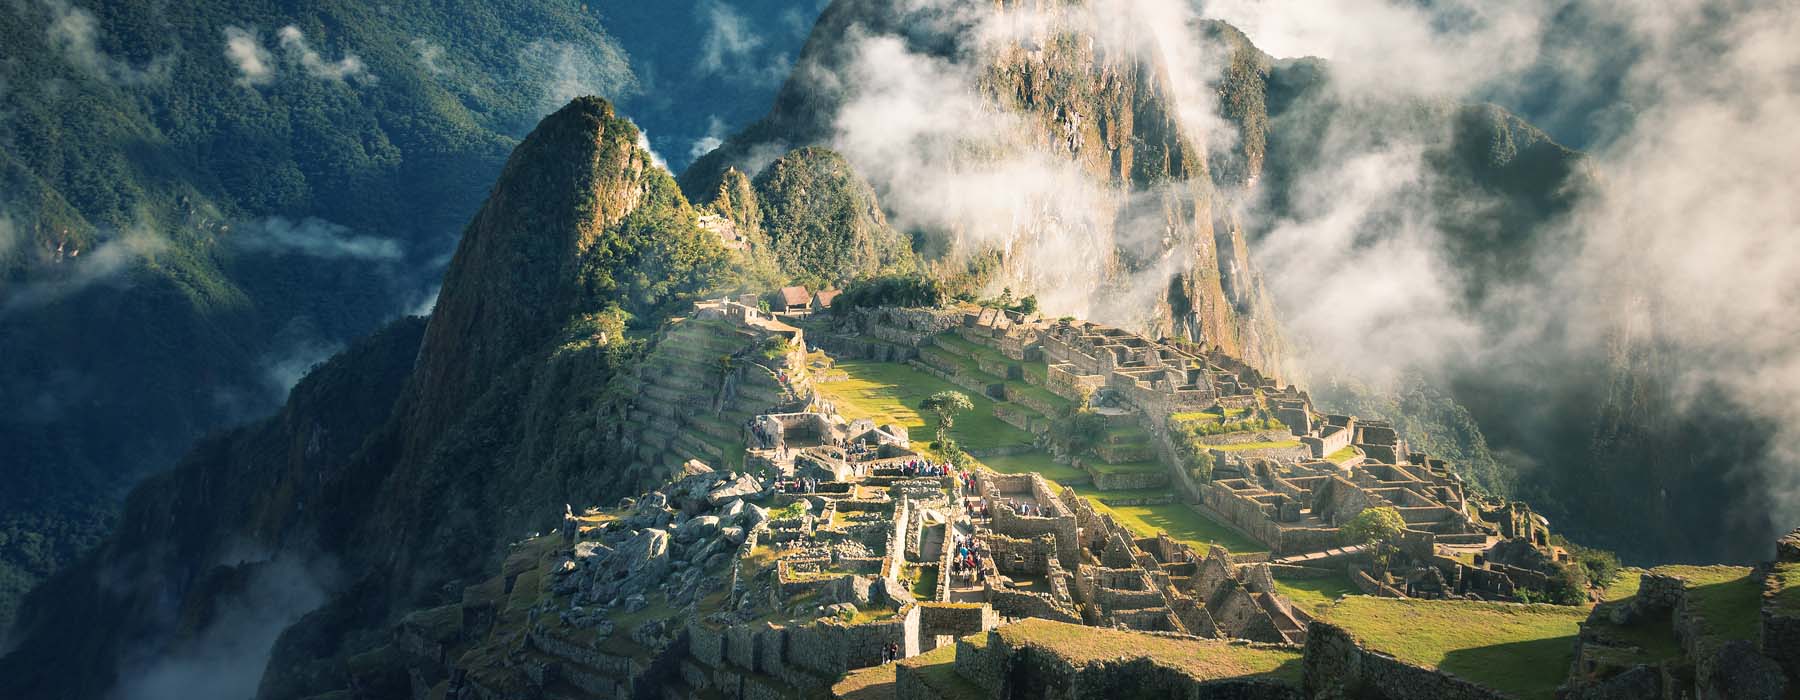 All our Peru<br class="hidden-md hidden-lg" /> Responsible Travel